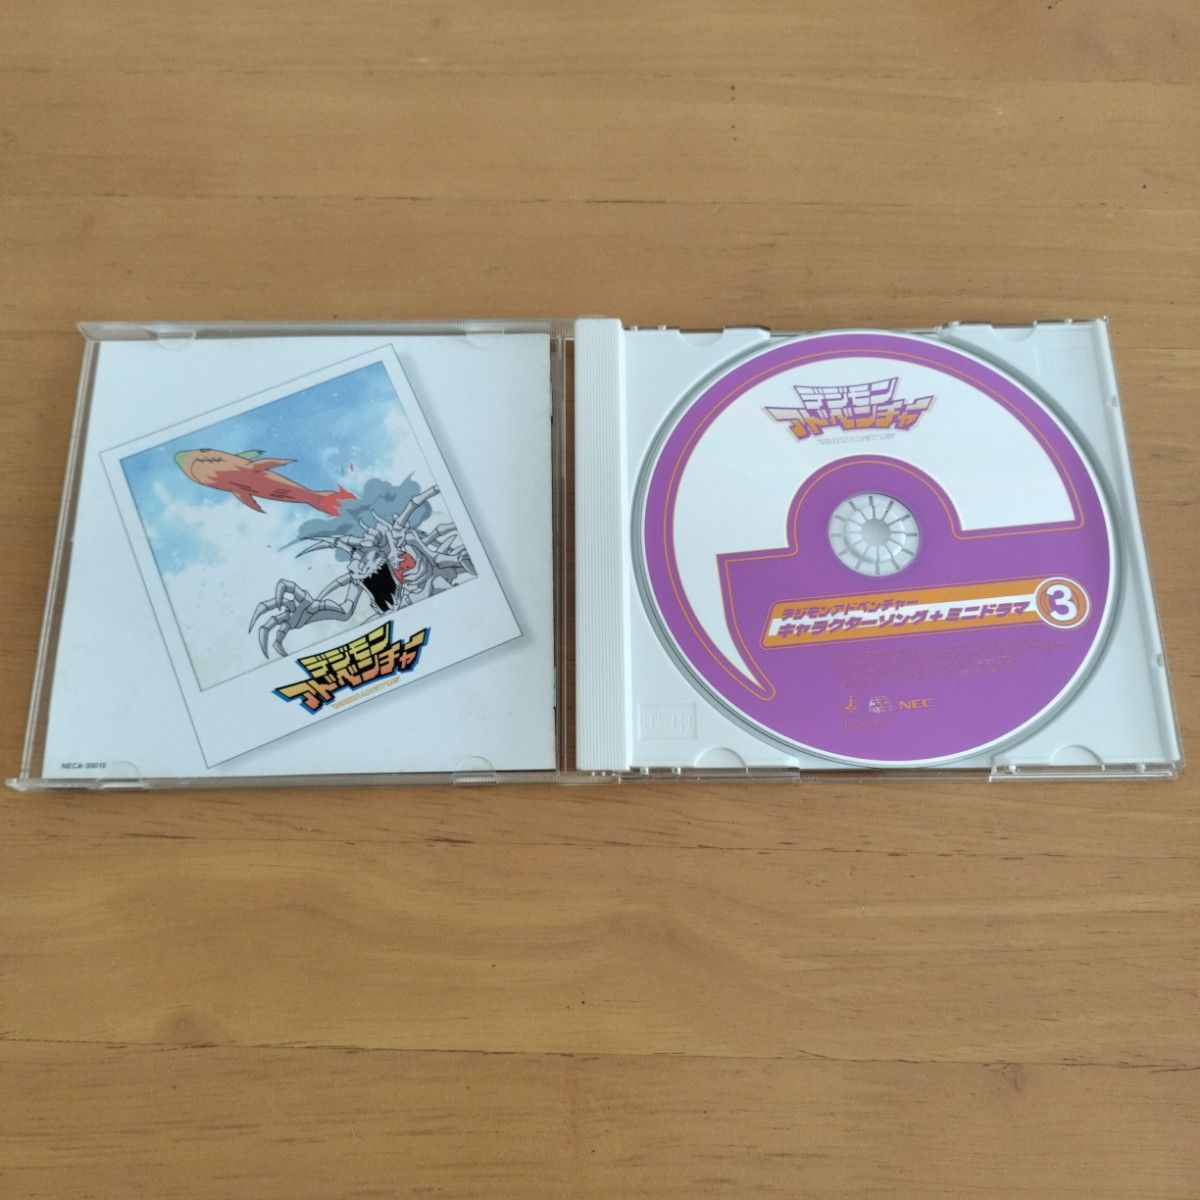 【再生確認済】デジモンアドベンチャー キャラクターソング+ミニドラマ3 CD